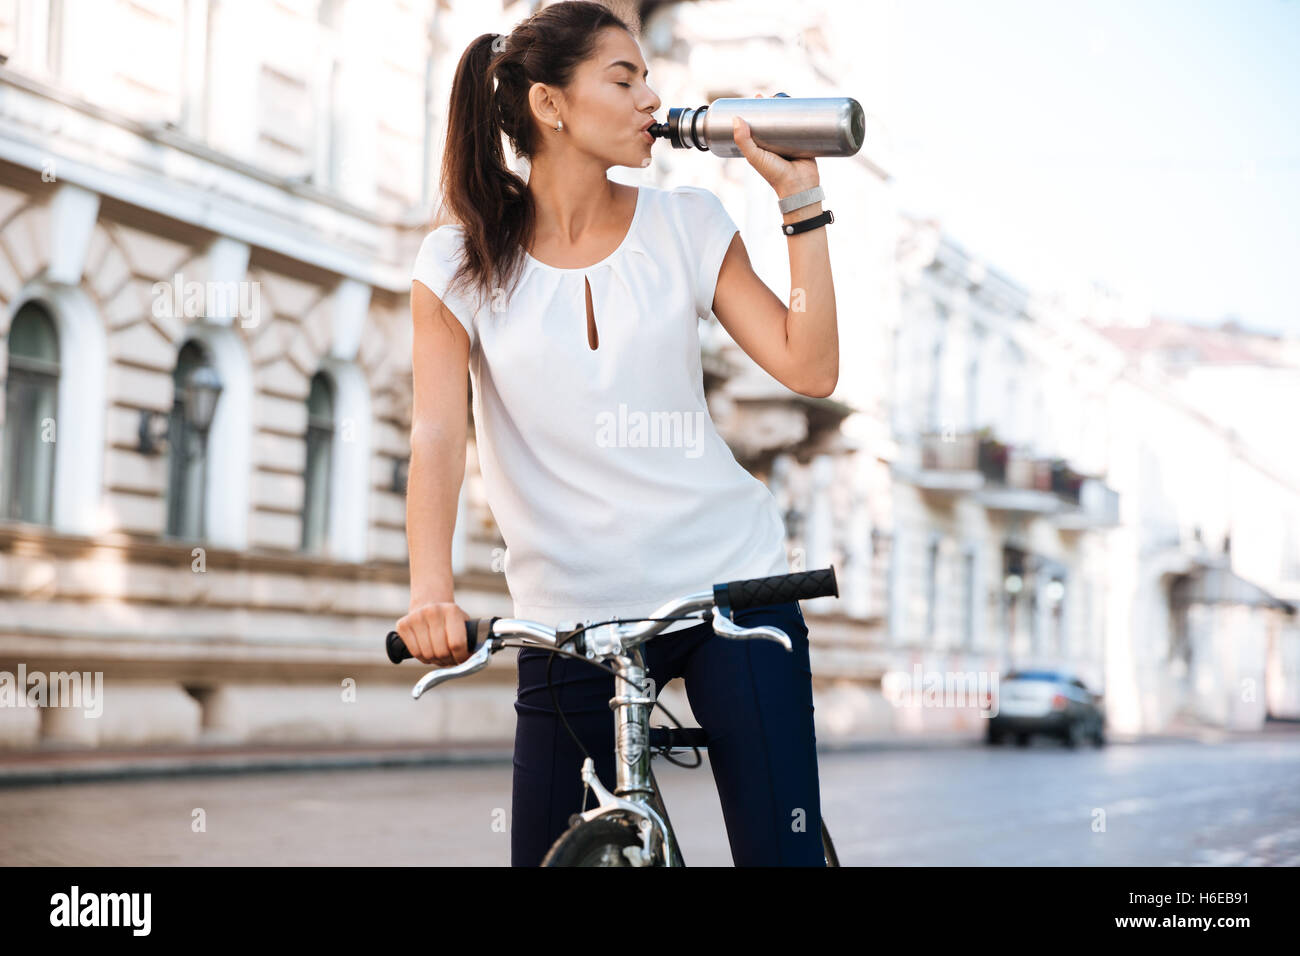 Junge schöne Frau Trinkwasser aus der Flasche während der Fahrt mit dem Fahrrad Stockfoto